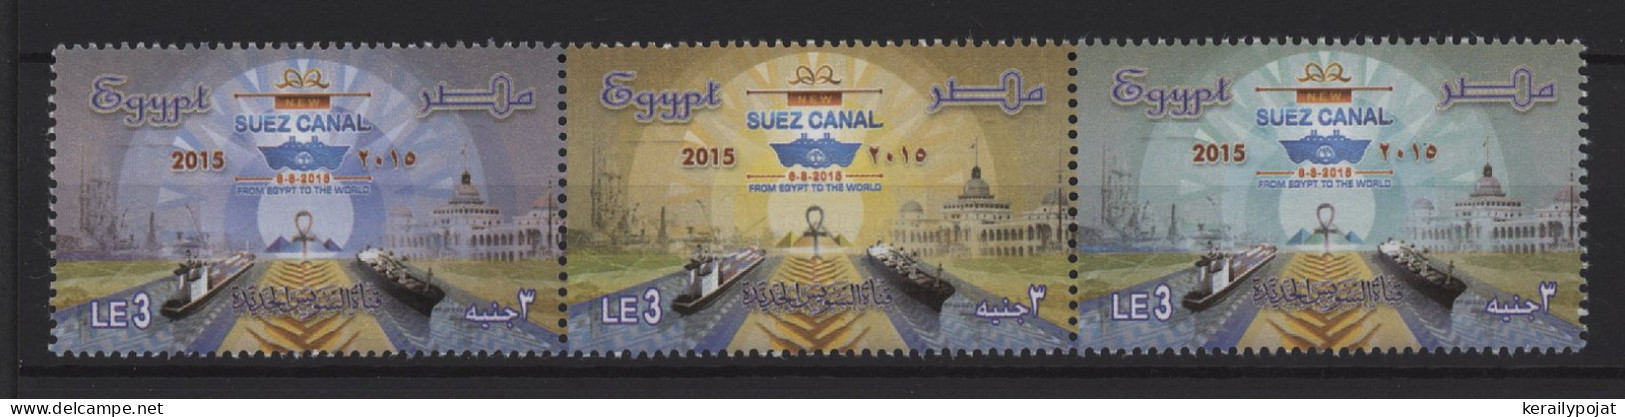 Egypt - 2015 New Suez Canal Strip MNH__(TH-26046) - Ungebraucht